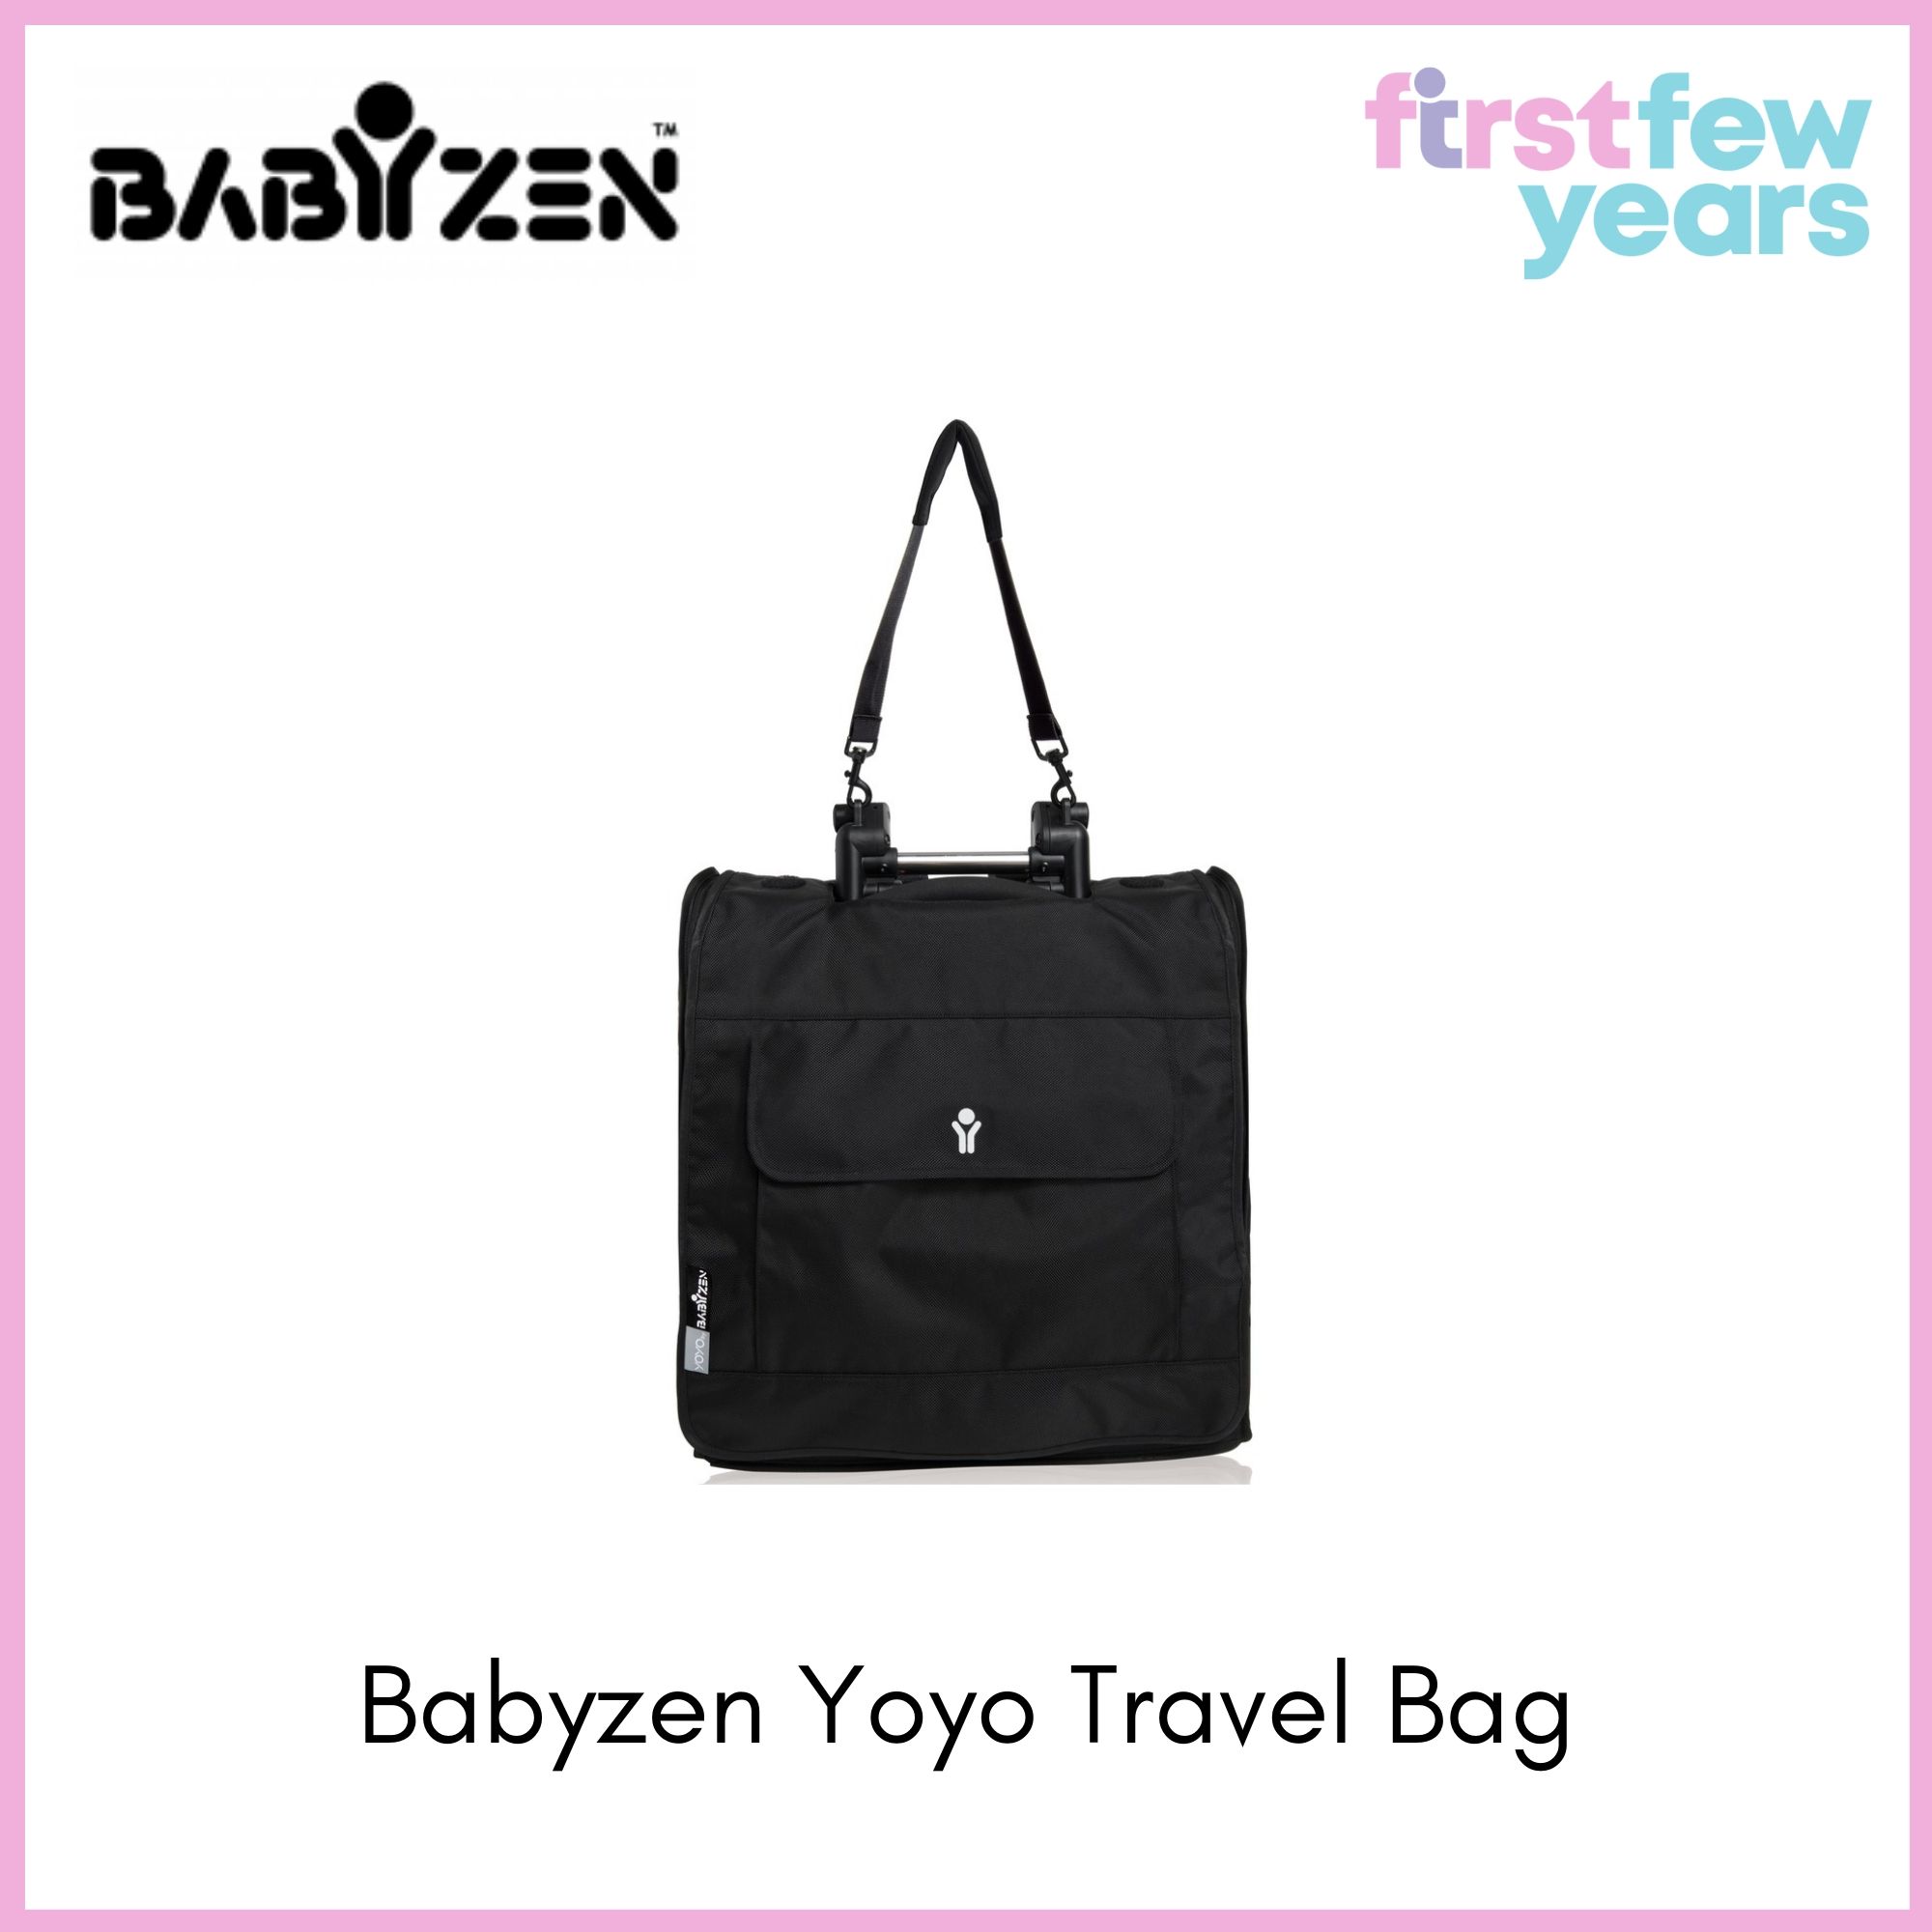 babyzen yoyo travel bag review